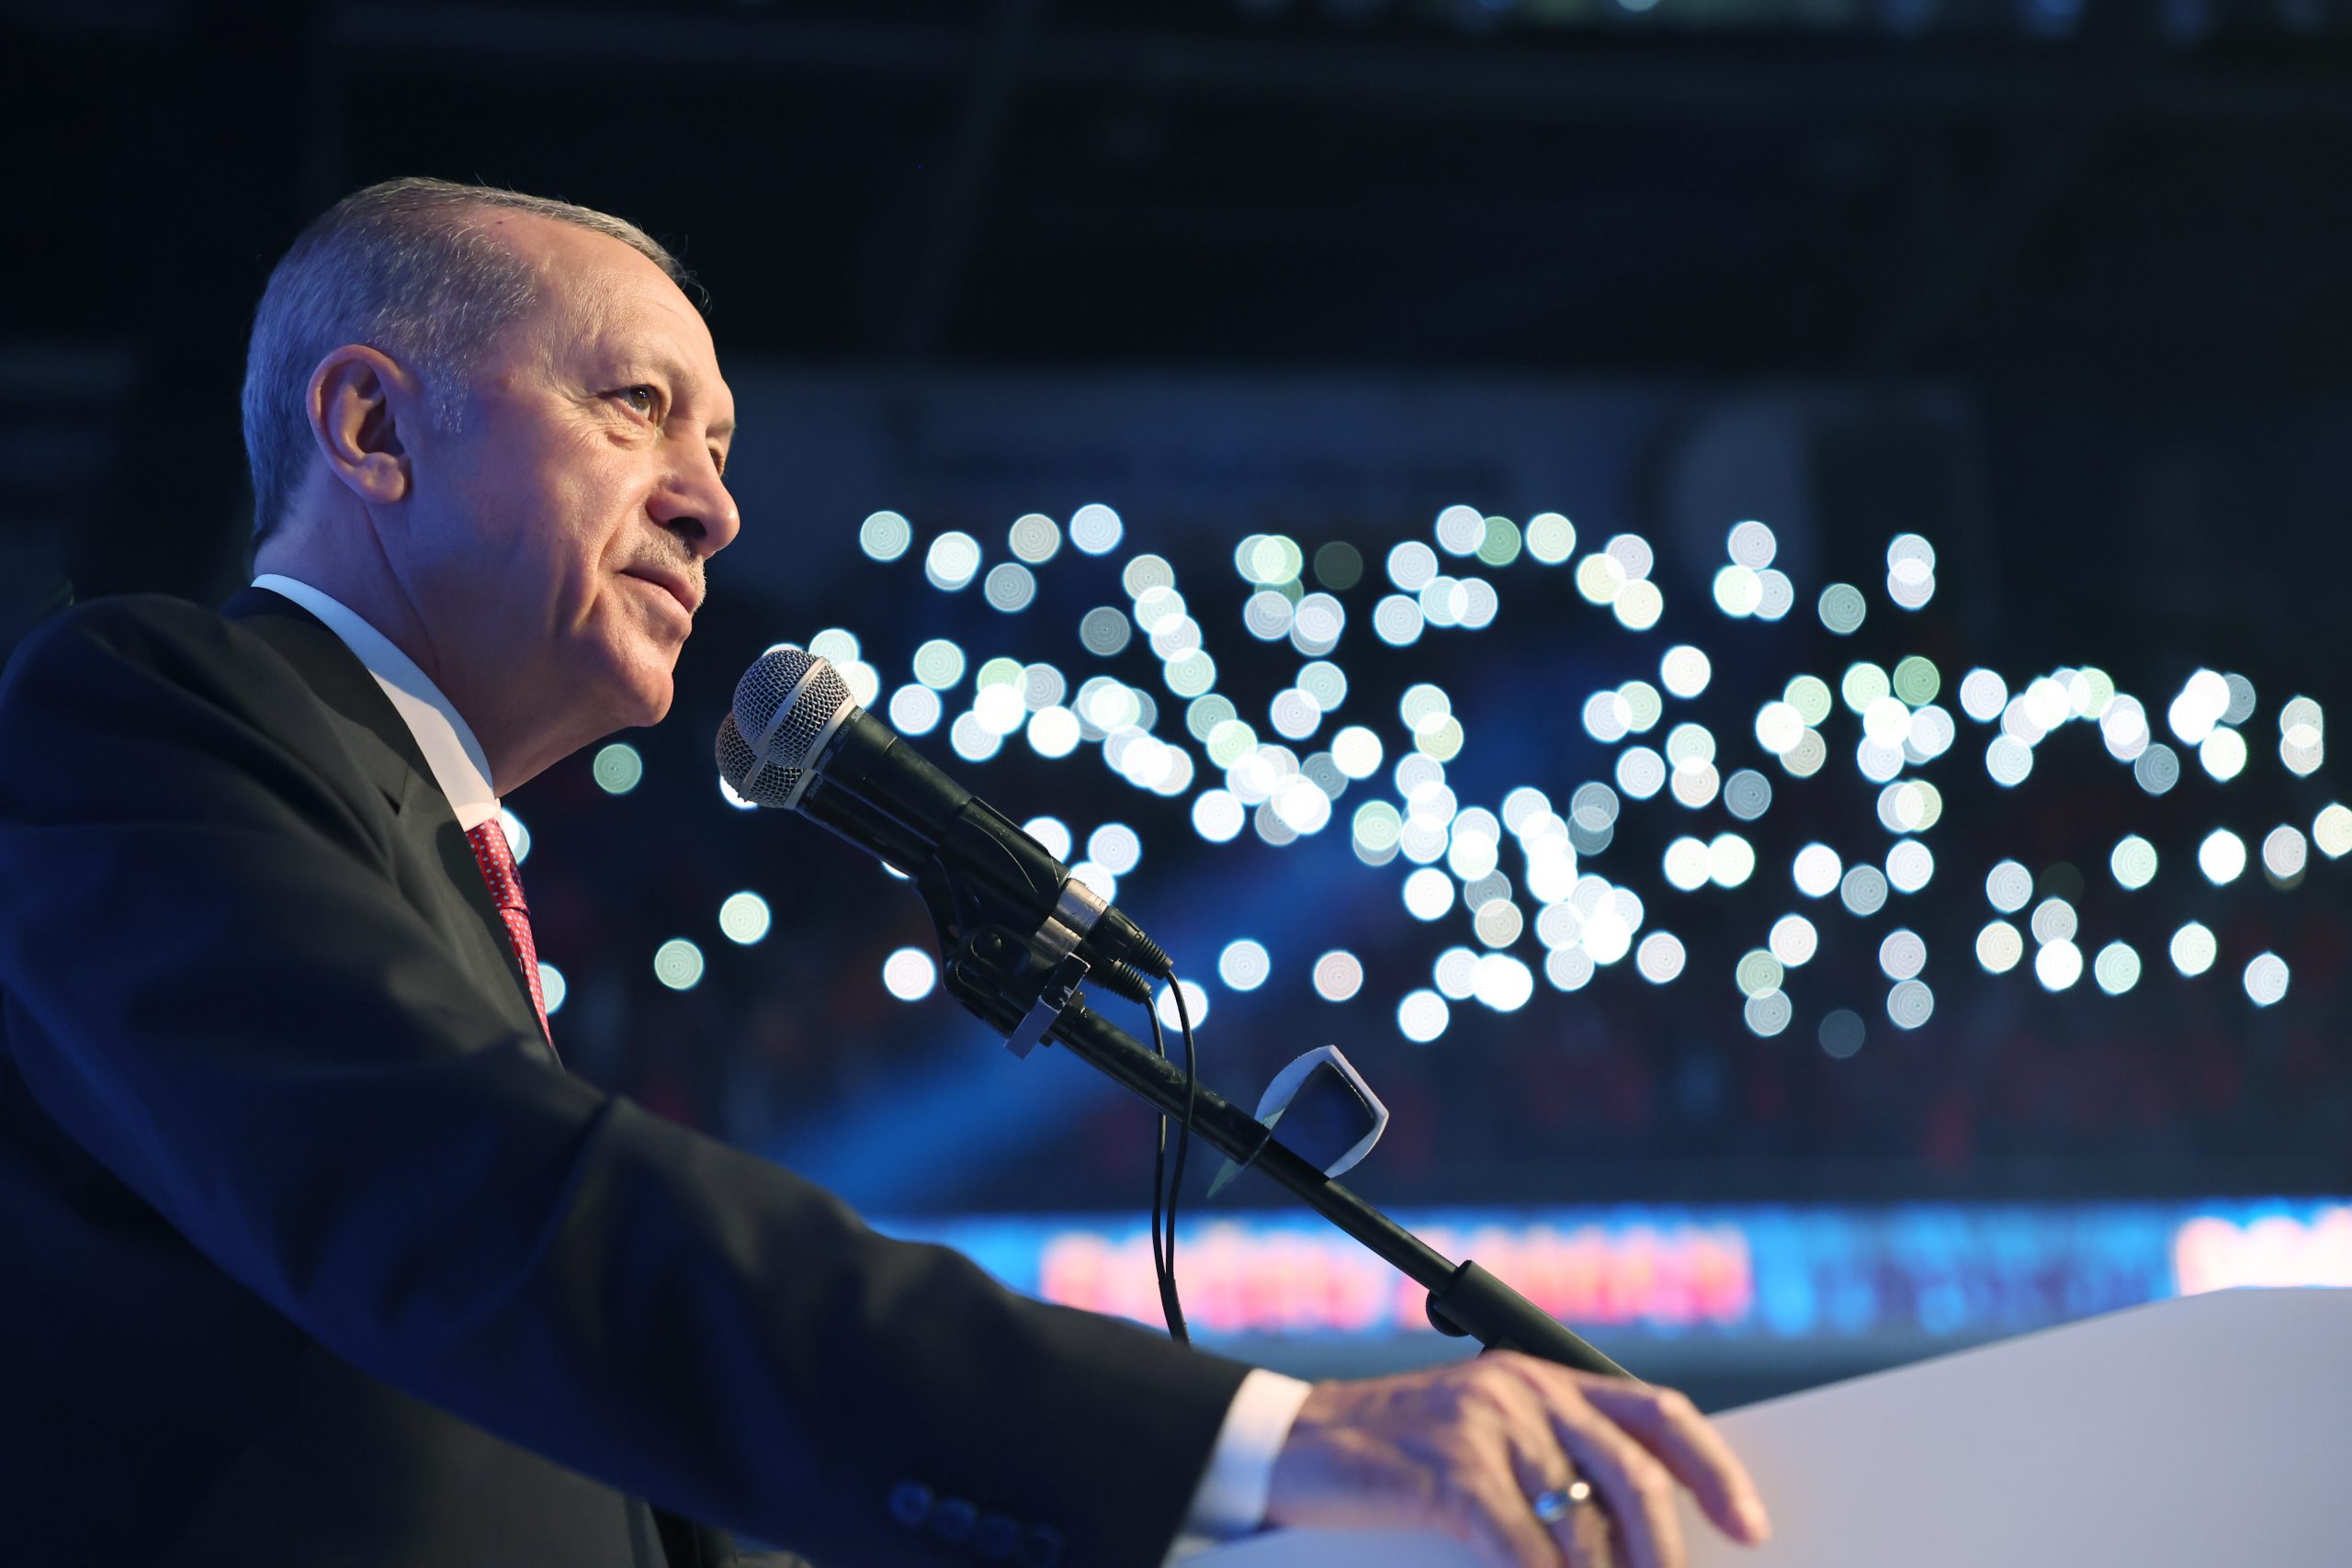 Cumhurbaşkanı Erdoğan’dan müjde üstüne müjde